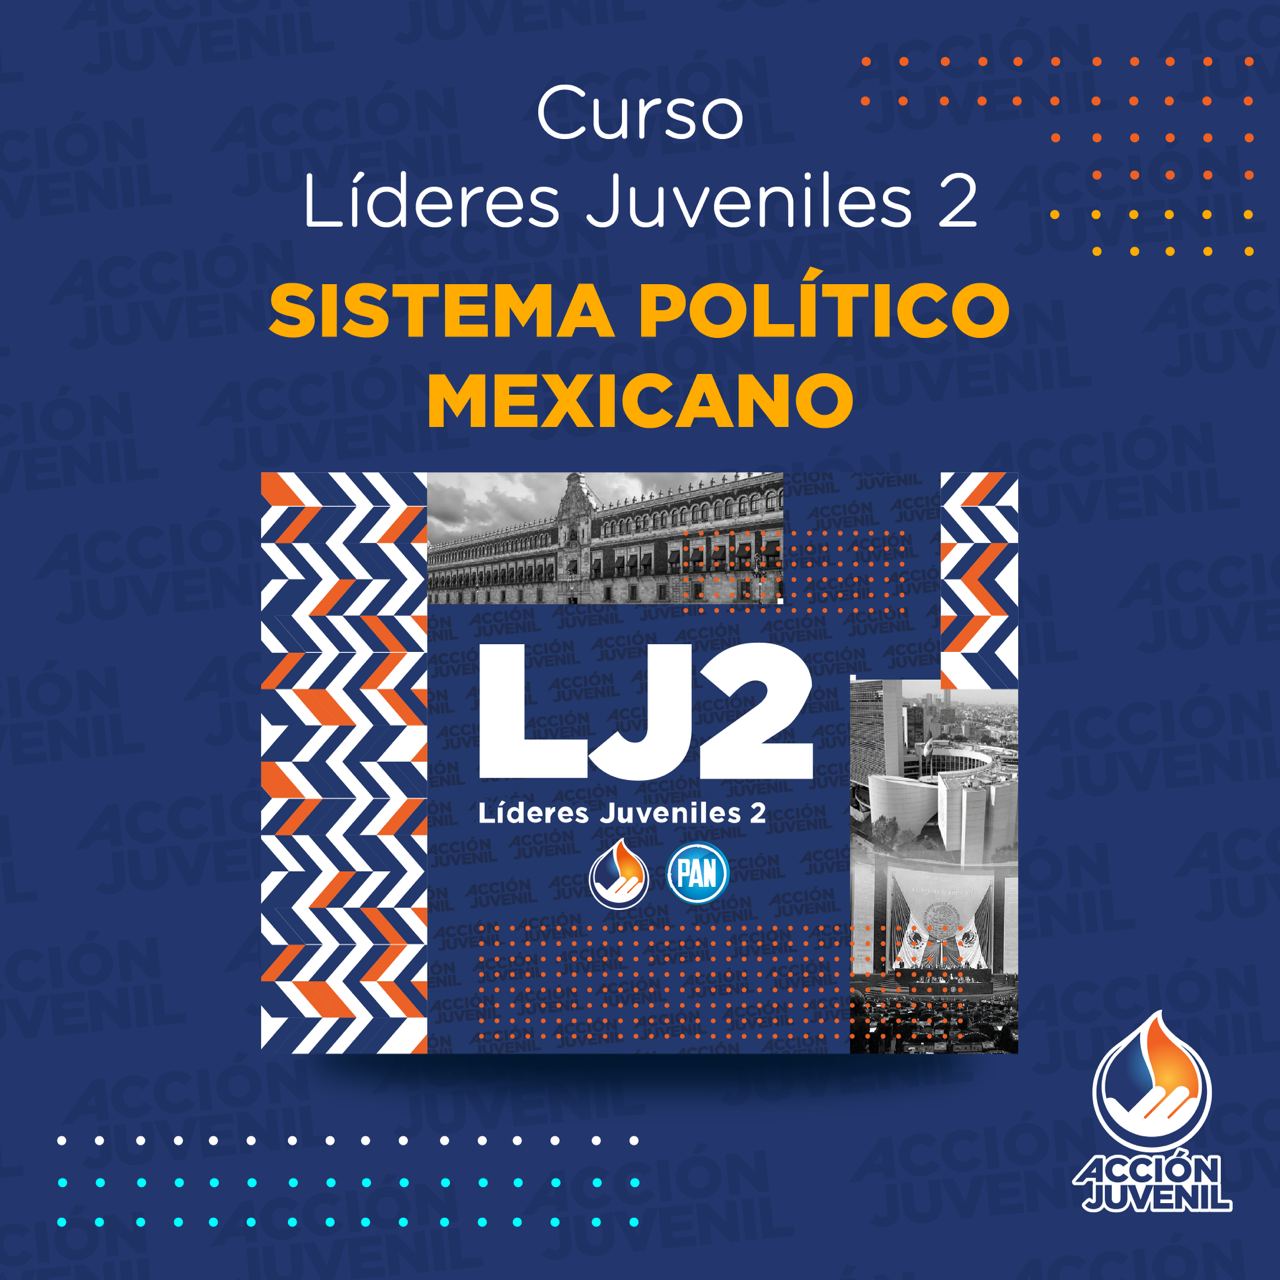 Curso Líderes Juveniles 2 Sistema Político Mexicano Celaya, GTO 25/06/22